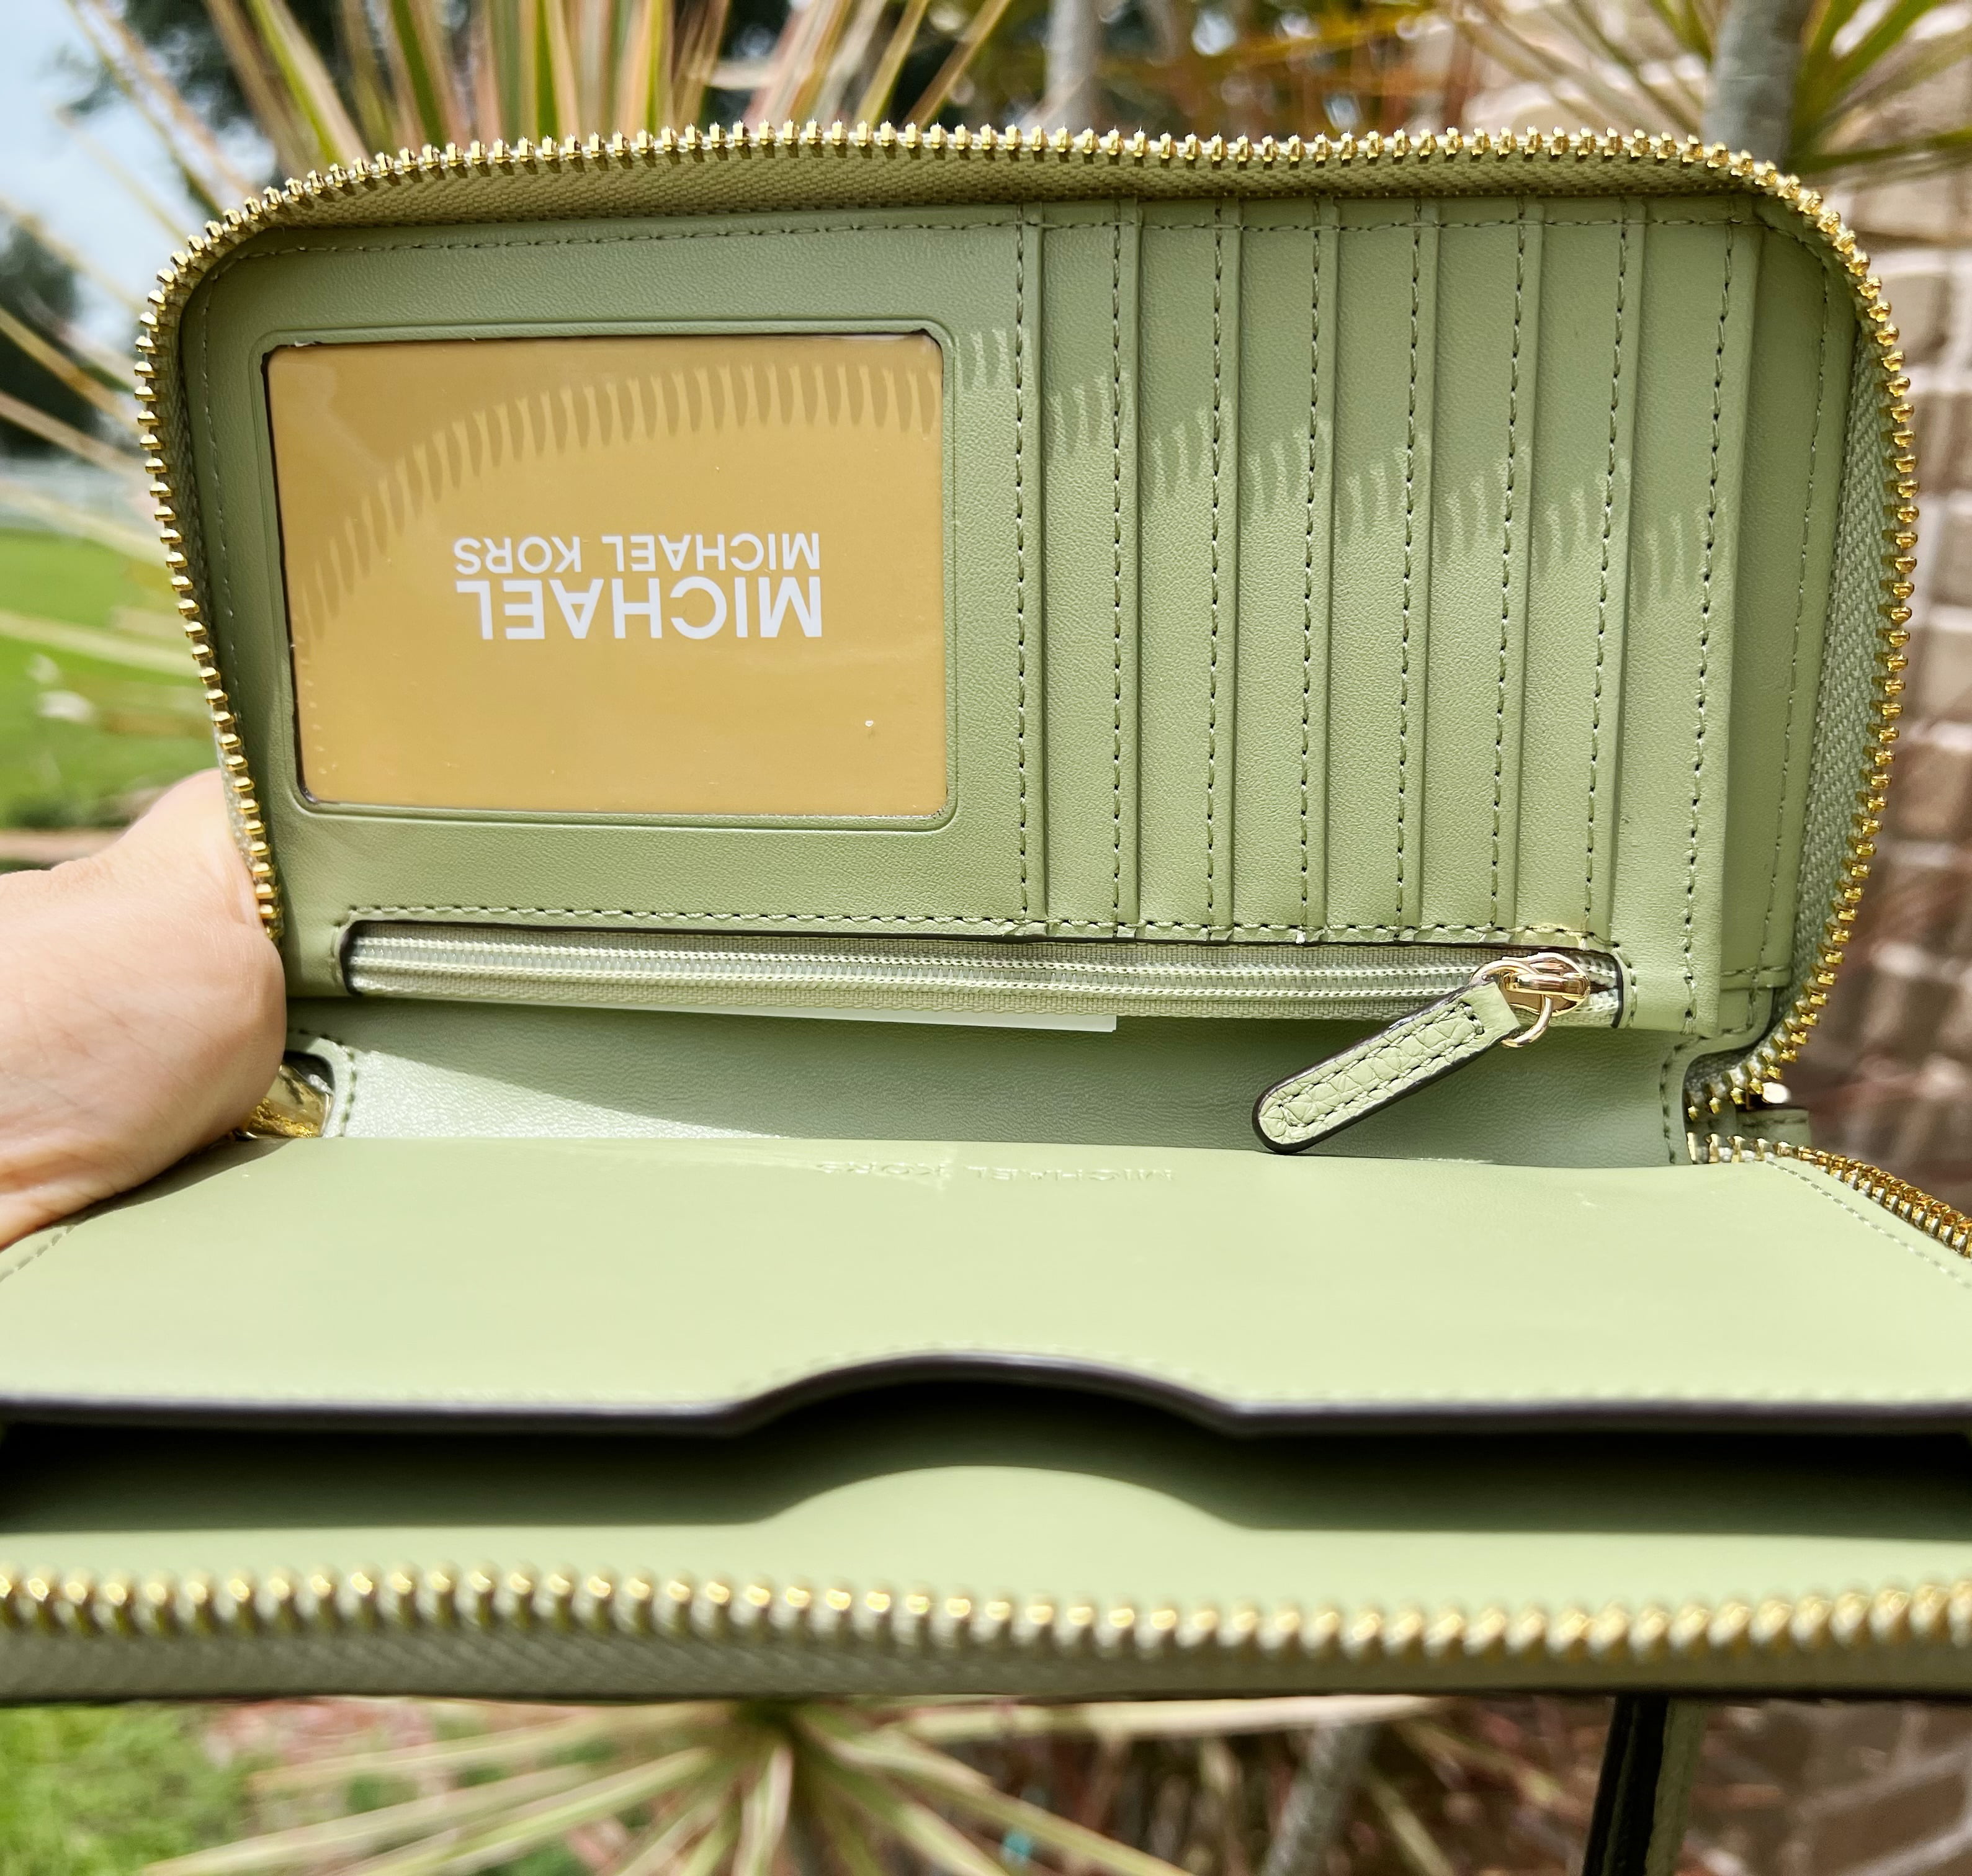 Michael Kors Jet Set Specchio Large Phone Wallet Case Palm Green